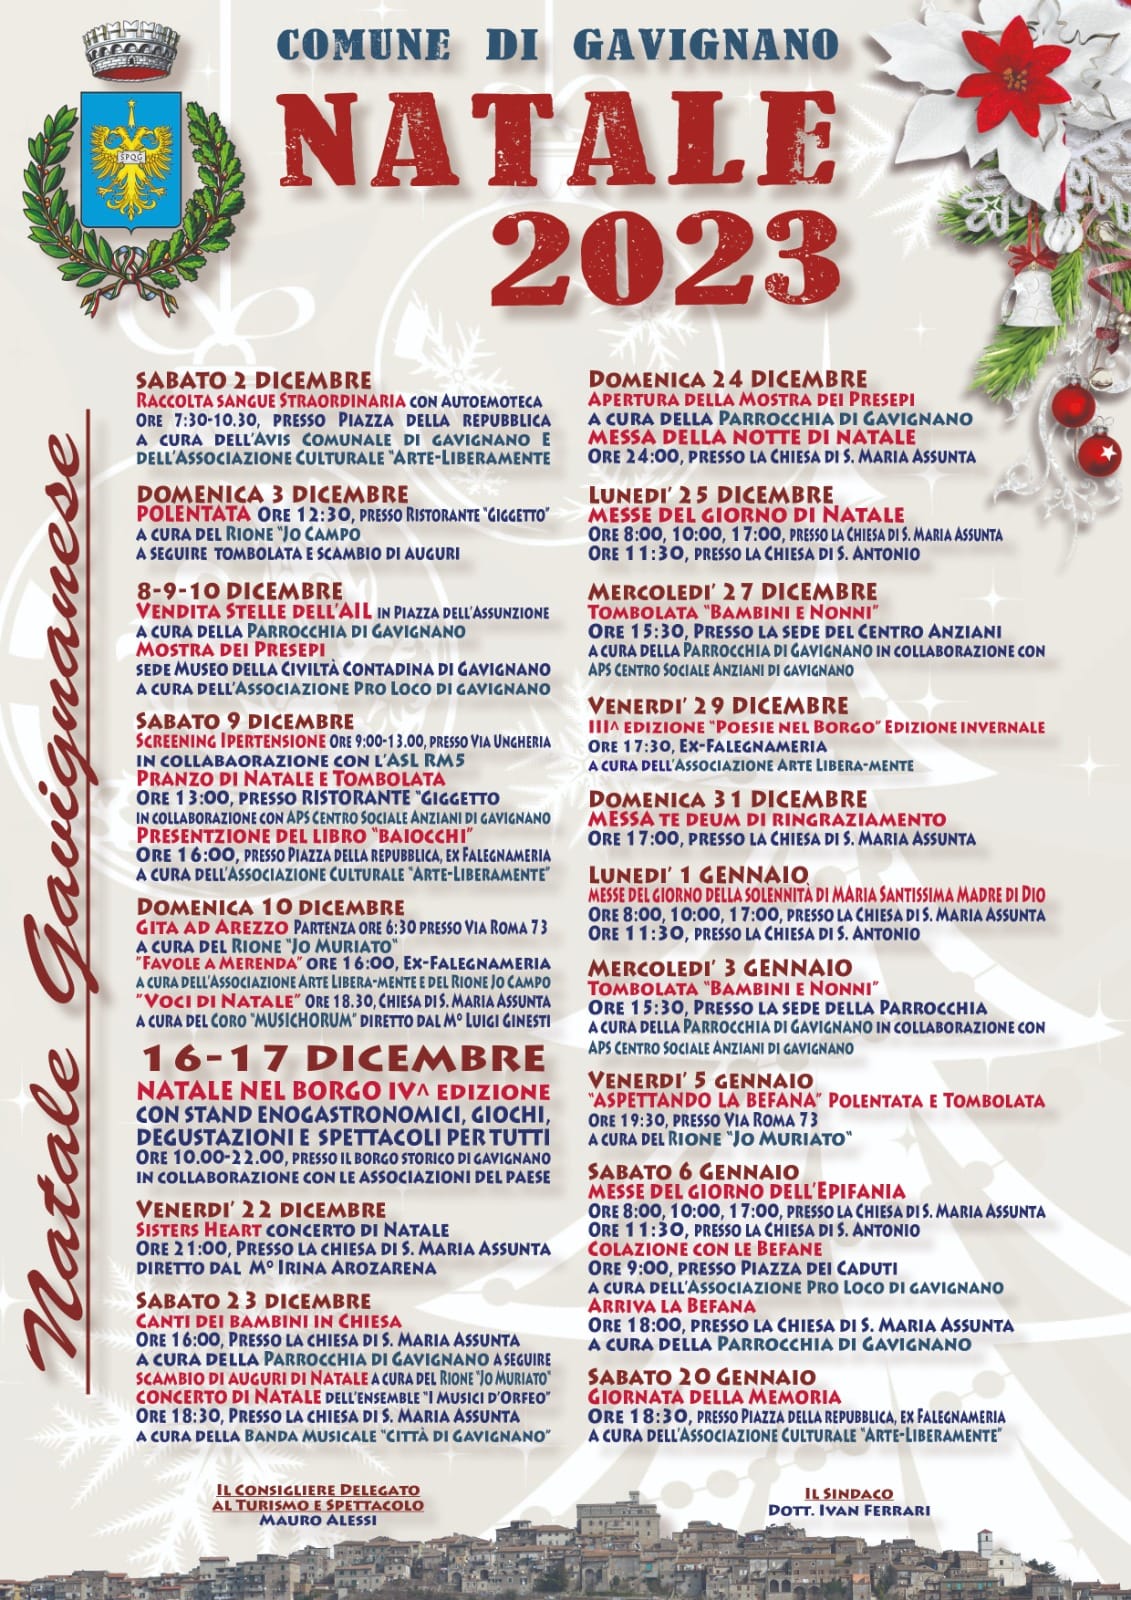 Gavignano: Natale 2023 @ Comune di Gavignano